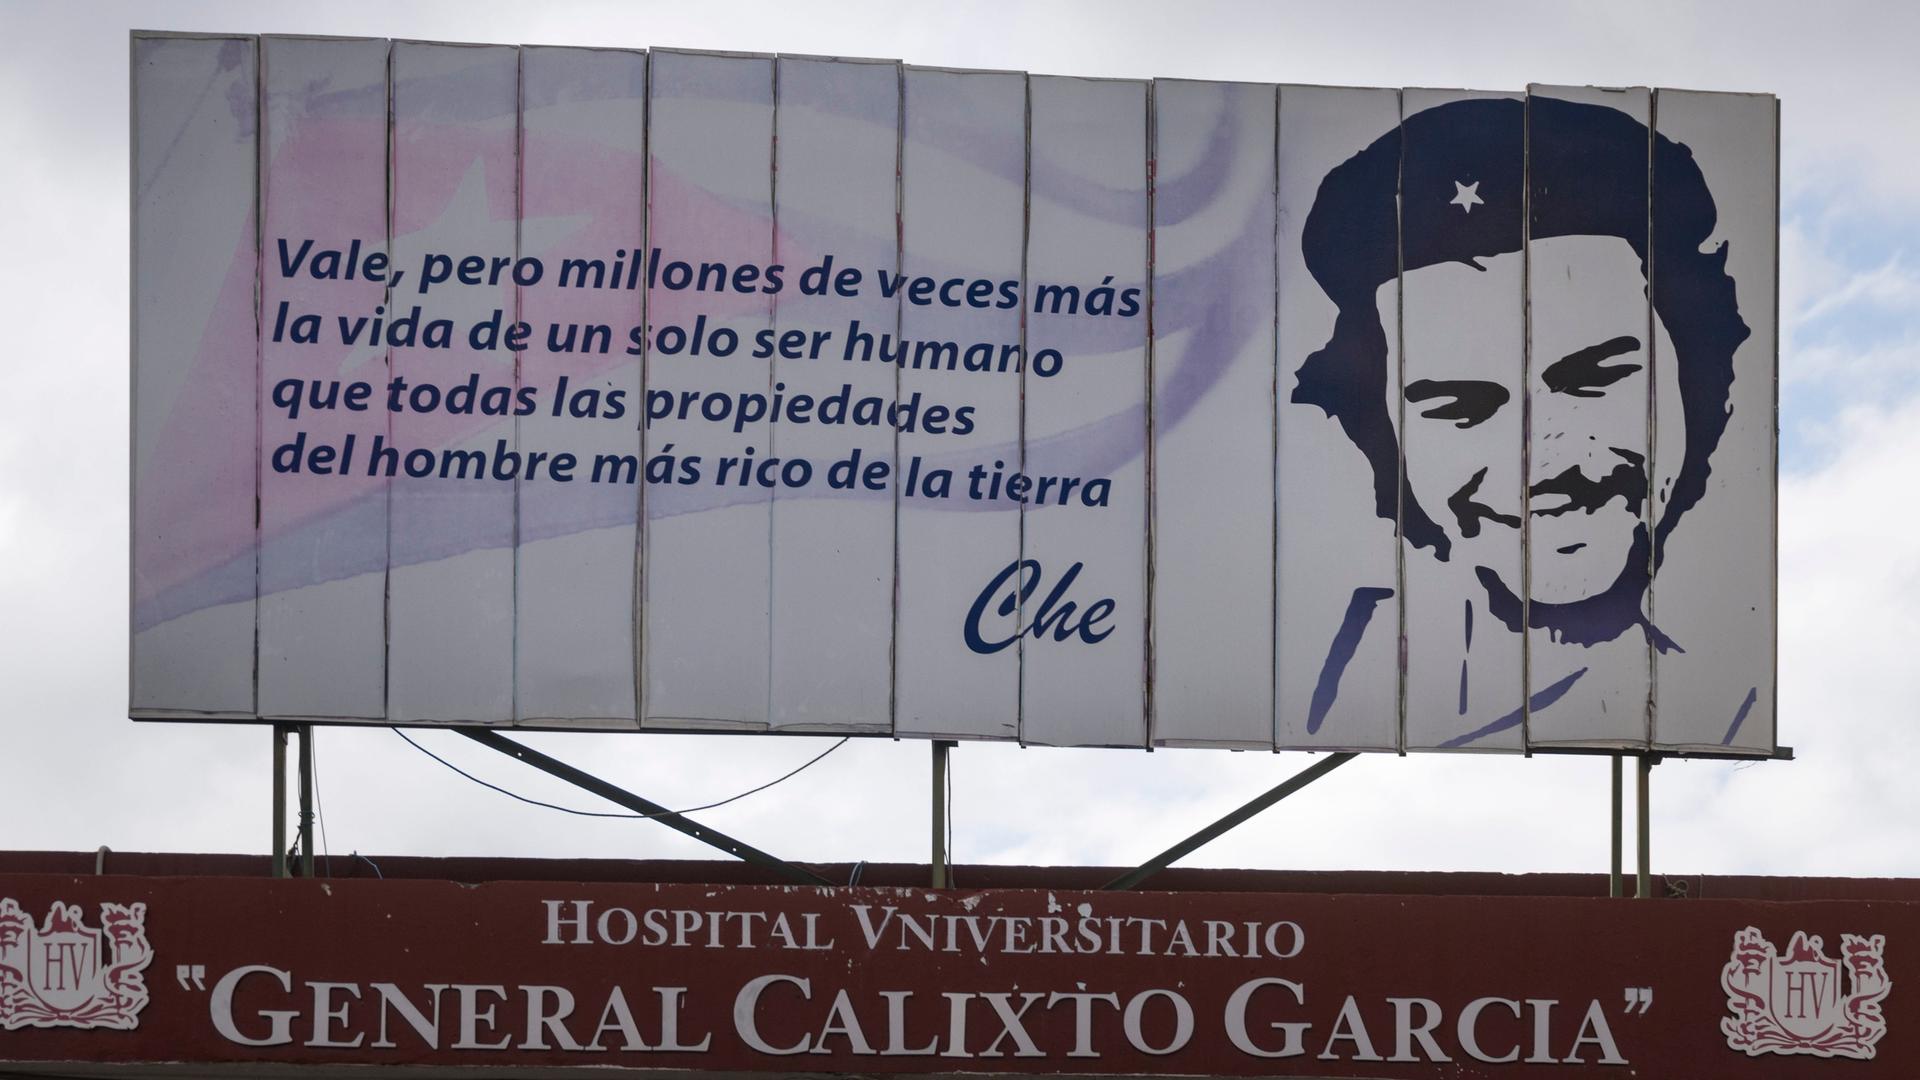 Ein Zitat des Revolutionshelden Che Guevara steht als Leitspruch über dem Eingangsportal der Universitätsklinik von Havanna